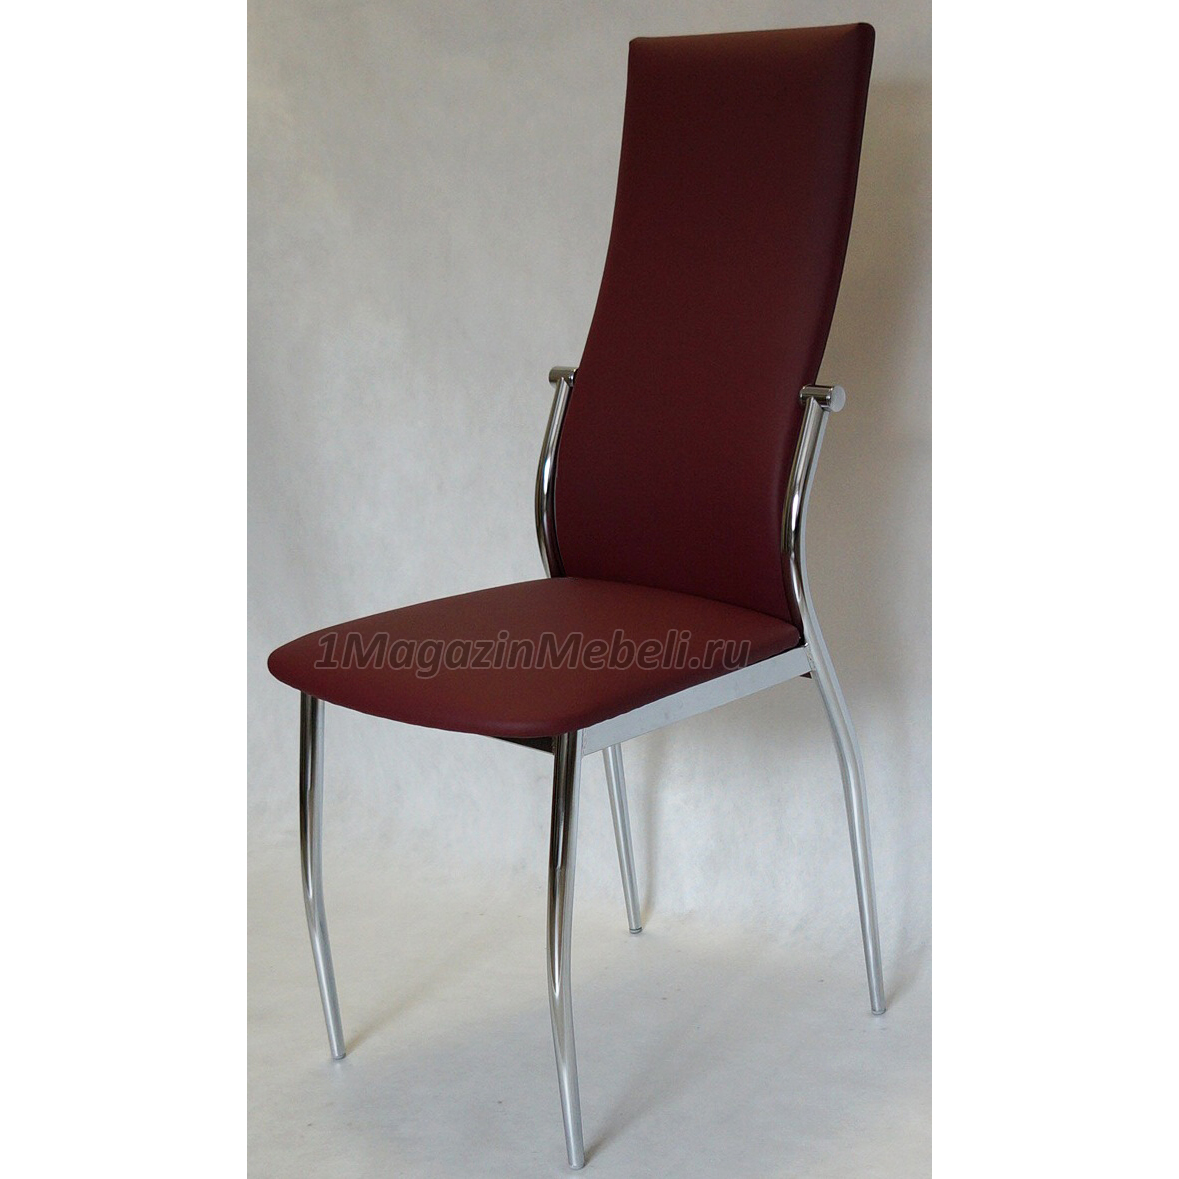 Удобный бордовый стул для кухни металлический, экокожа, хром (арт. М3225)